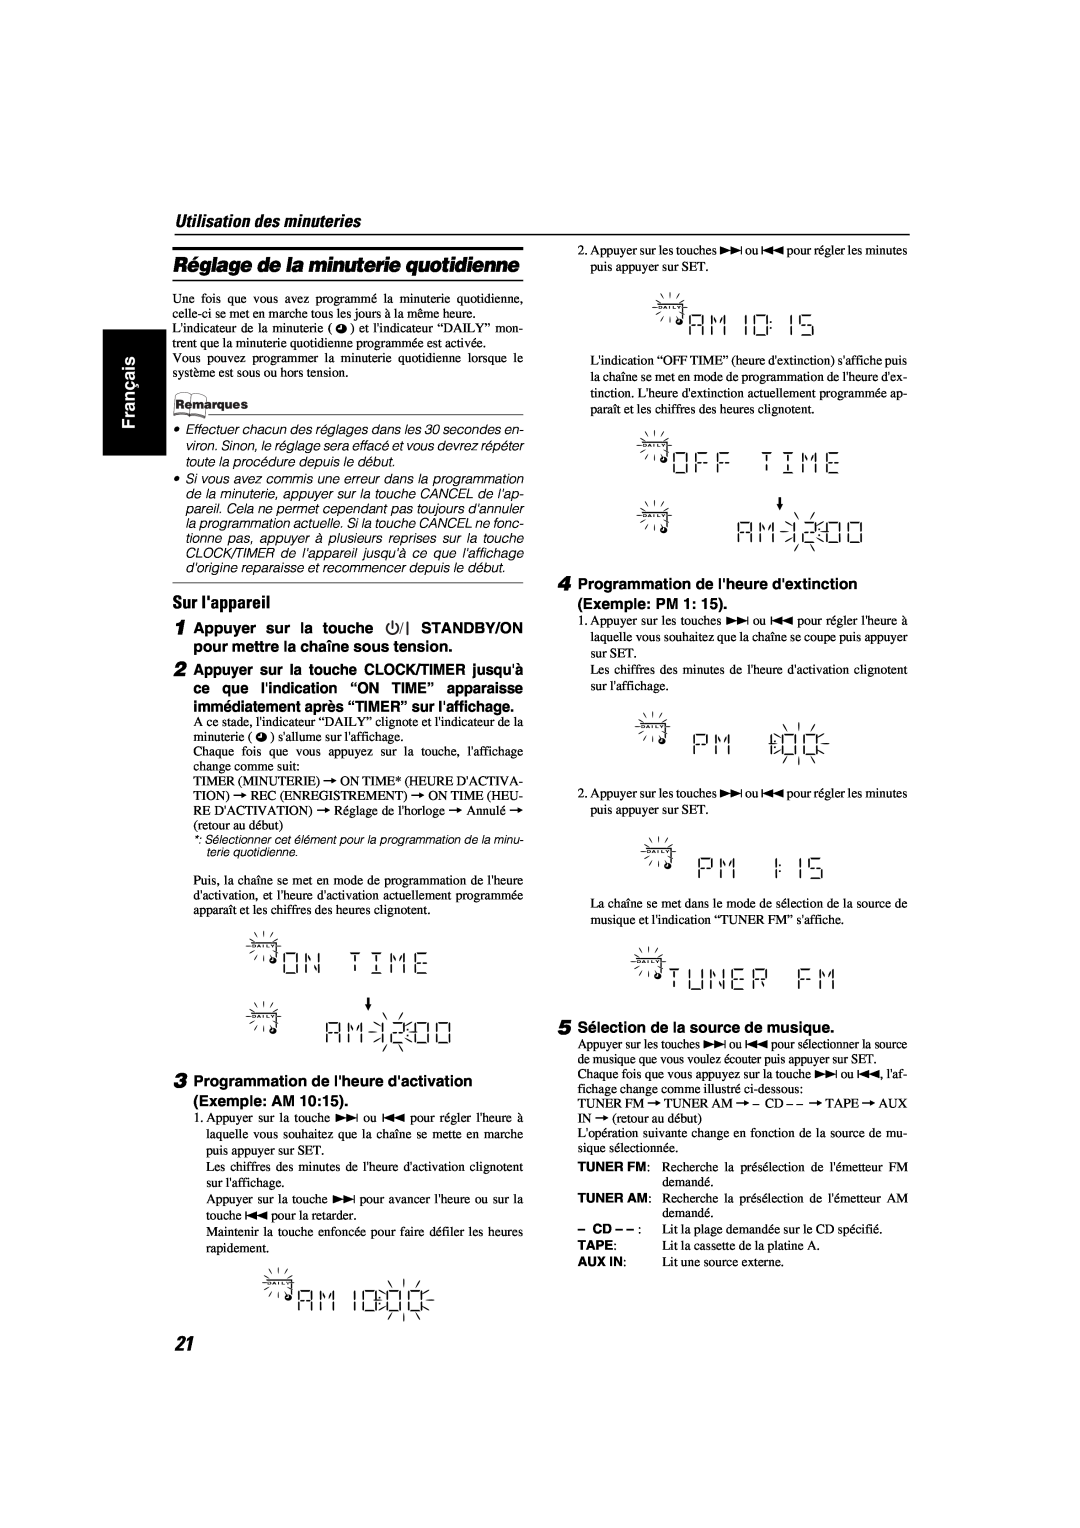 JVC MX-KA6 manual Utilisation des minuteries, Réglage de la minuterie quotidienne, Français, Sur lappareil 